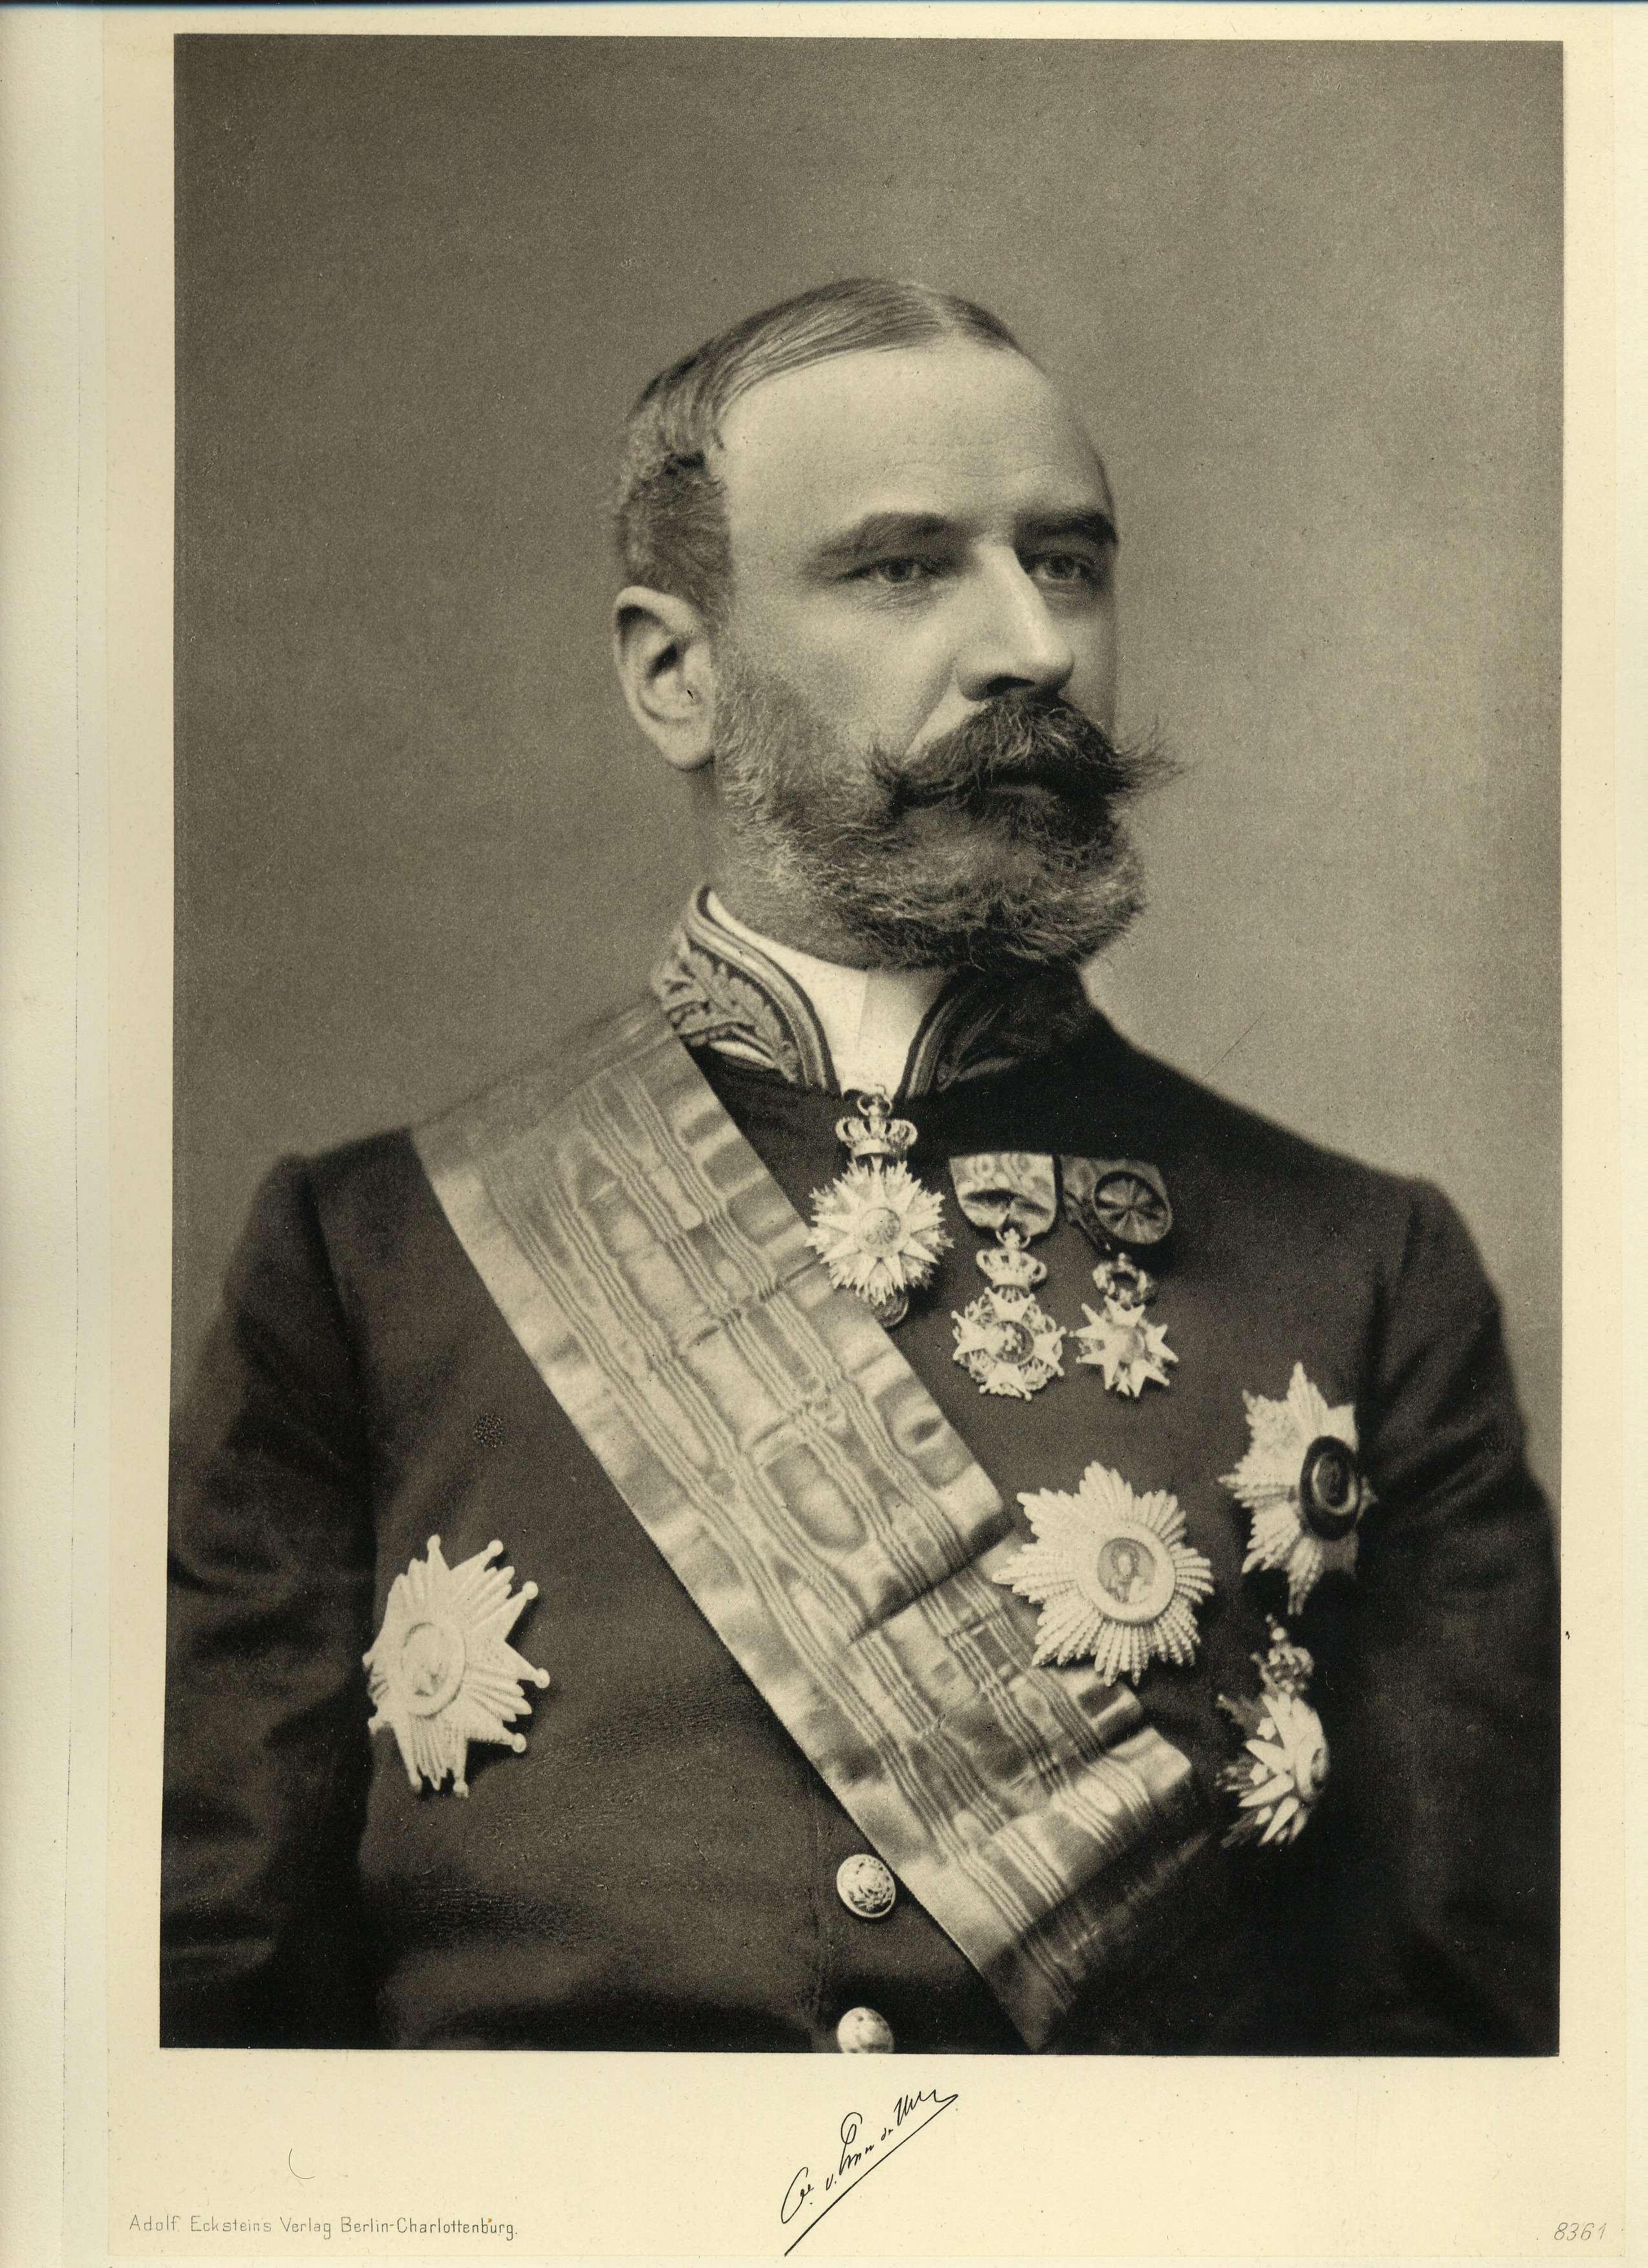 Count Paul de Smet de Naeyer